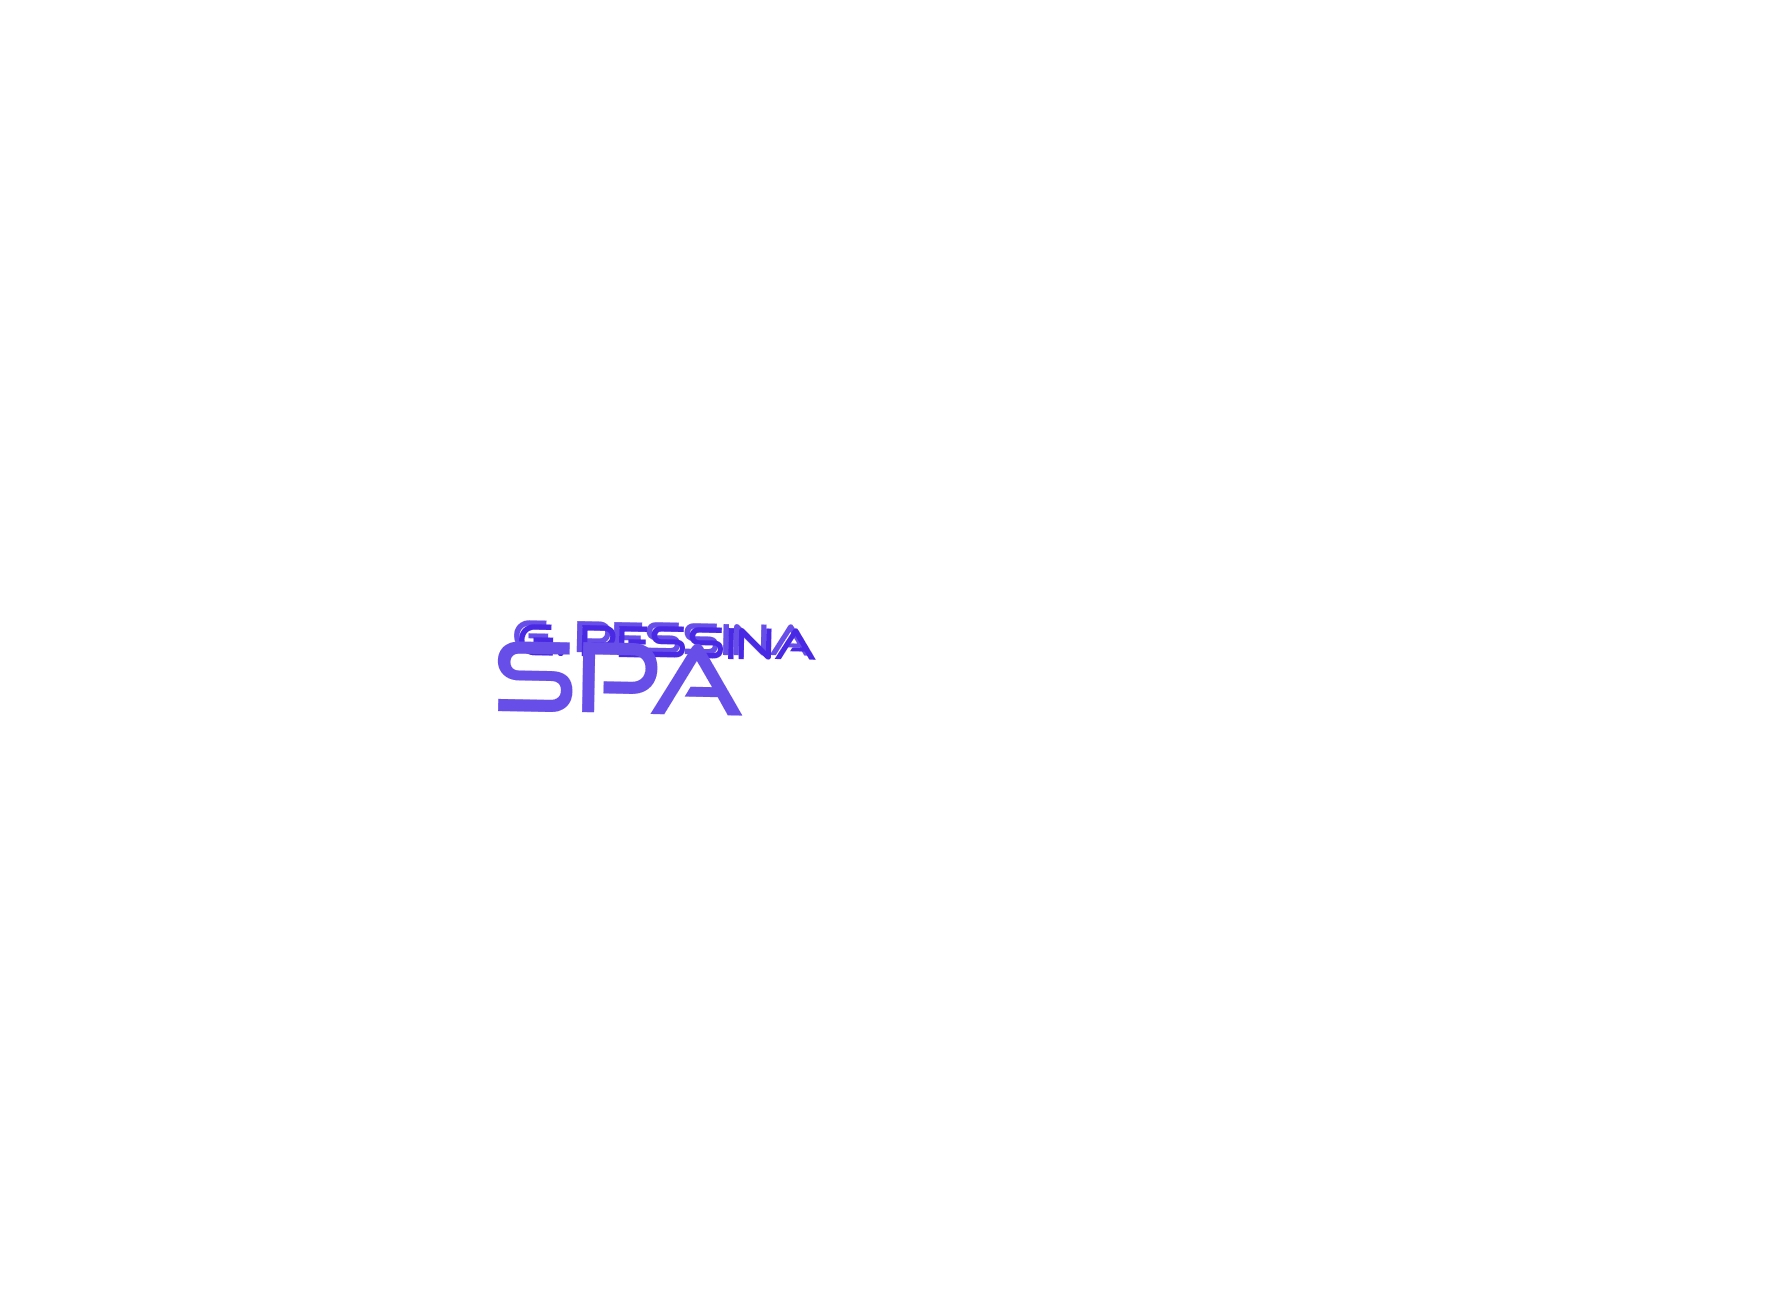 logo G. Pessina SpA